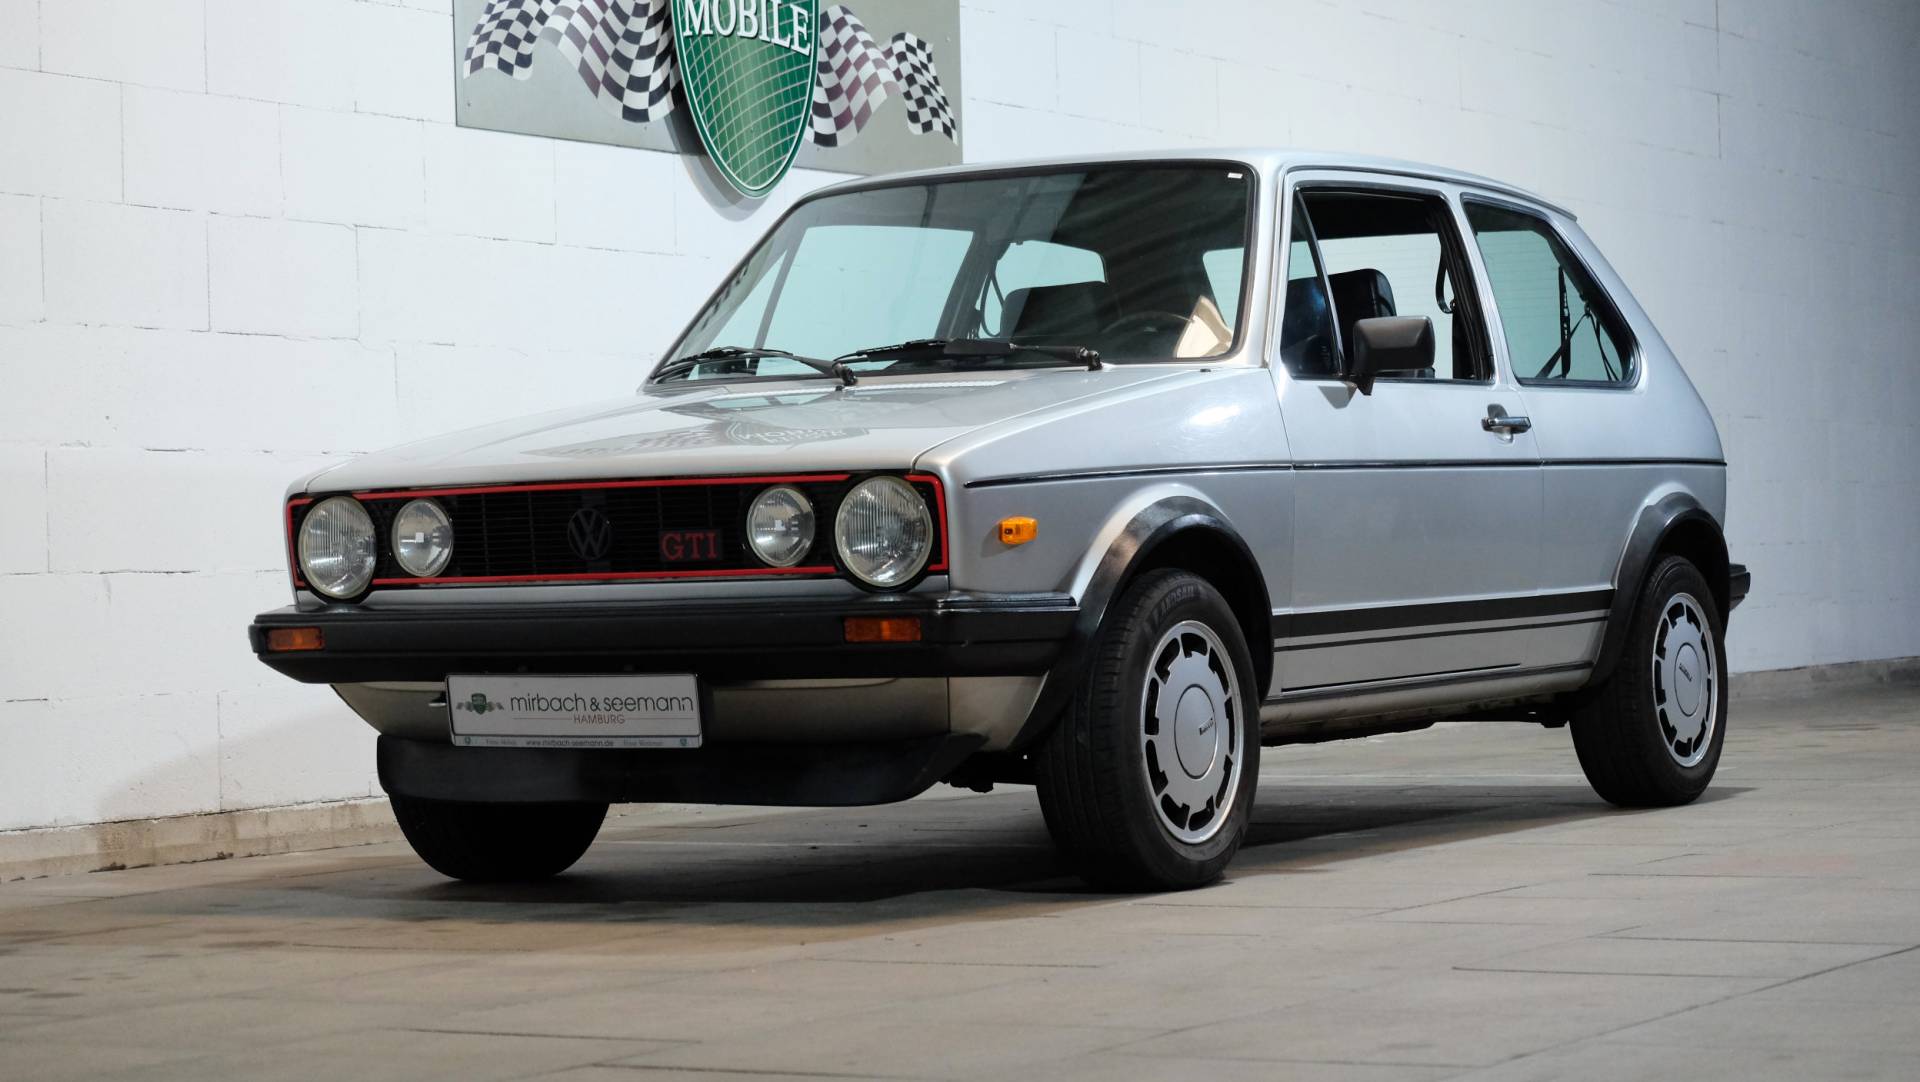 Voorverkoop Manie Ultieme Te koop: Volkswagen Golf I GTI 1.6 (1981) aangeboden voor € 23.900